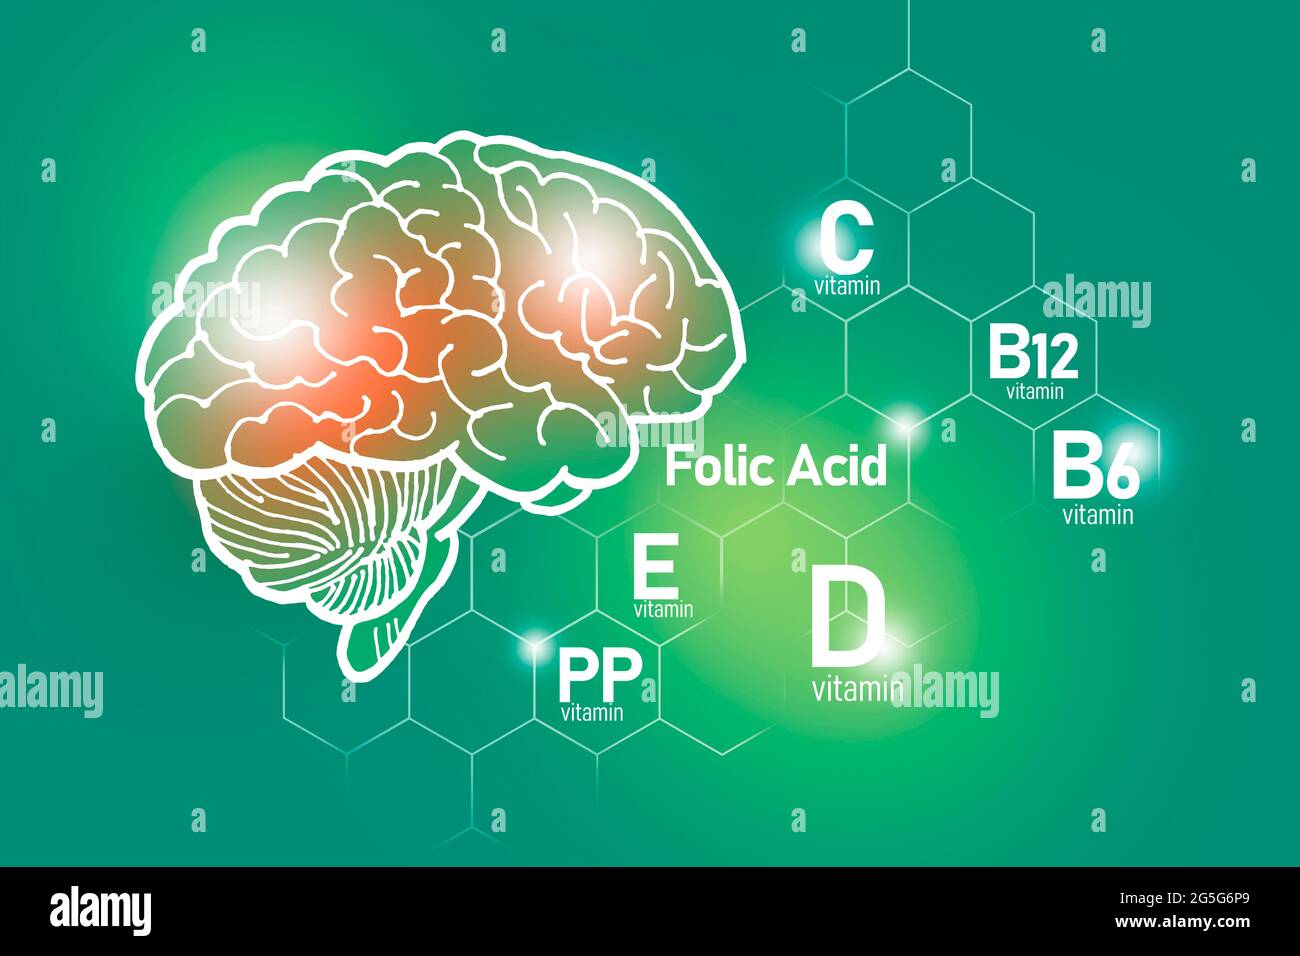 Essentielle Nährstoffe für die Gesundheit des Gehirns, einschließlich Vitamin C, Vitamin B, Folsäure, Vitamin PP. Design-Set der wichtigsten menschlichen Organe mit Vitaminen Stockfoto